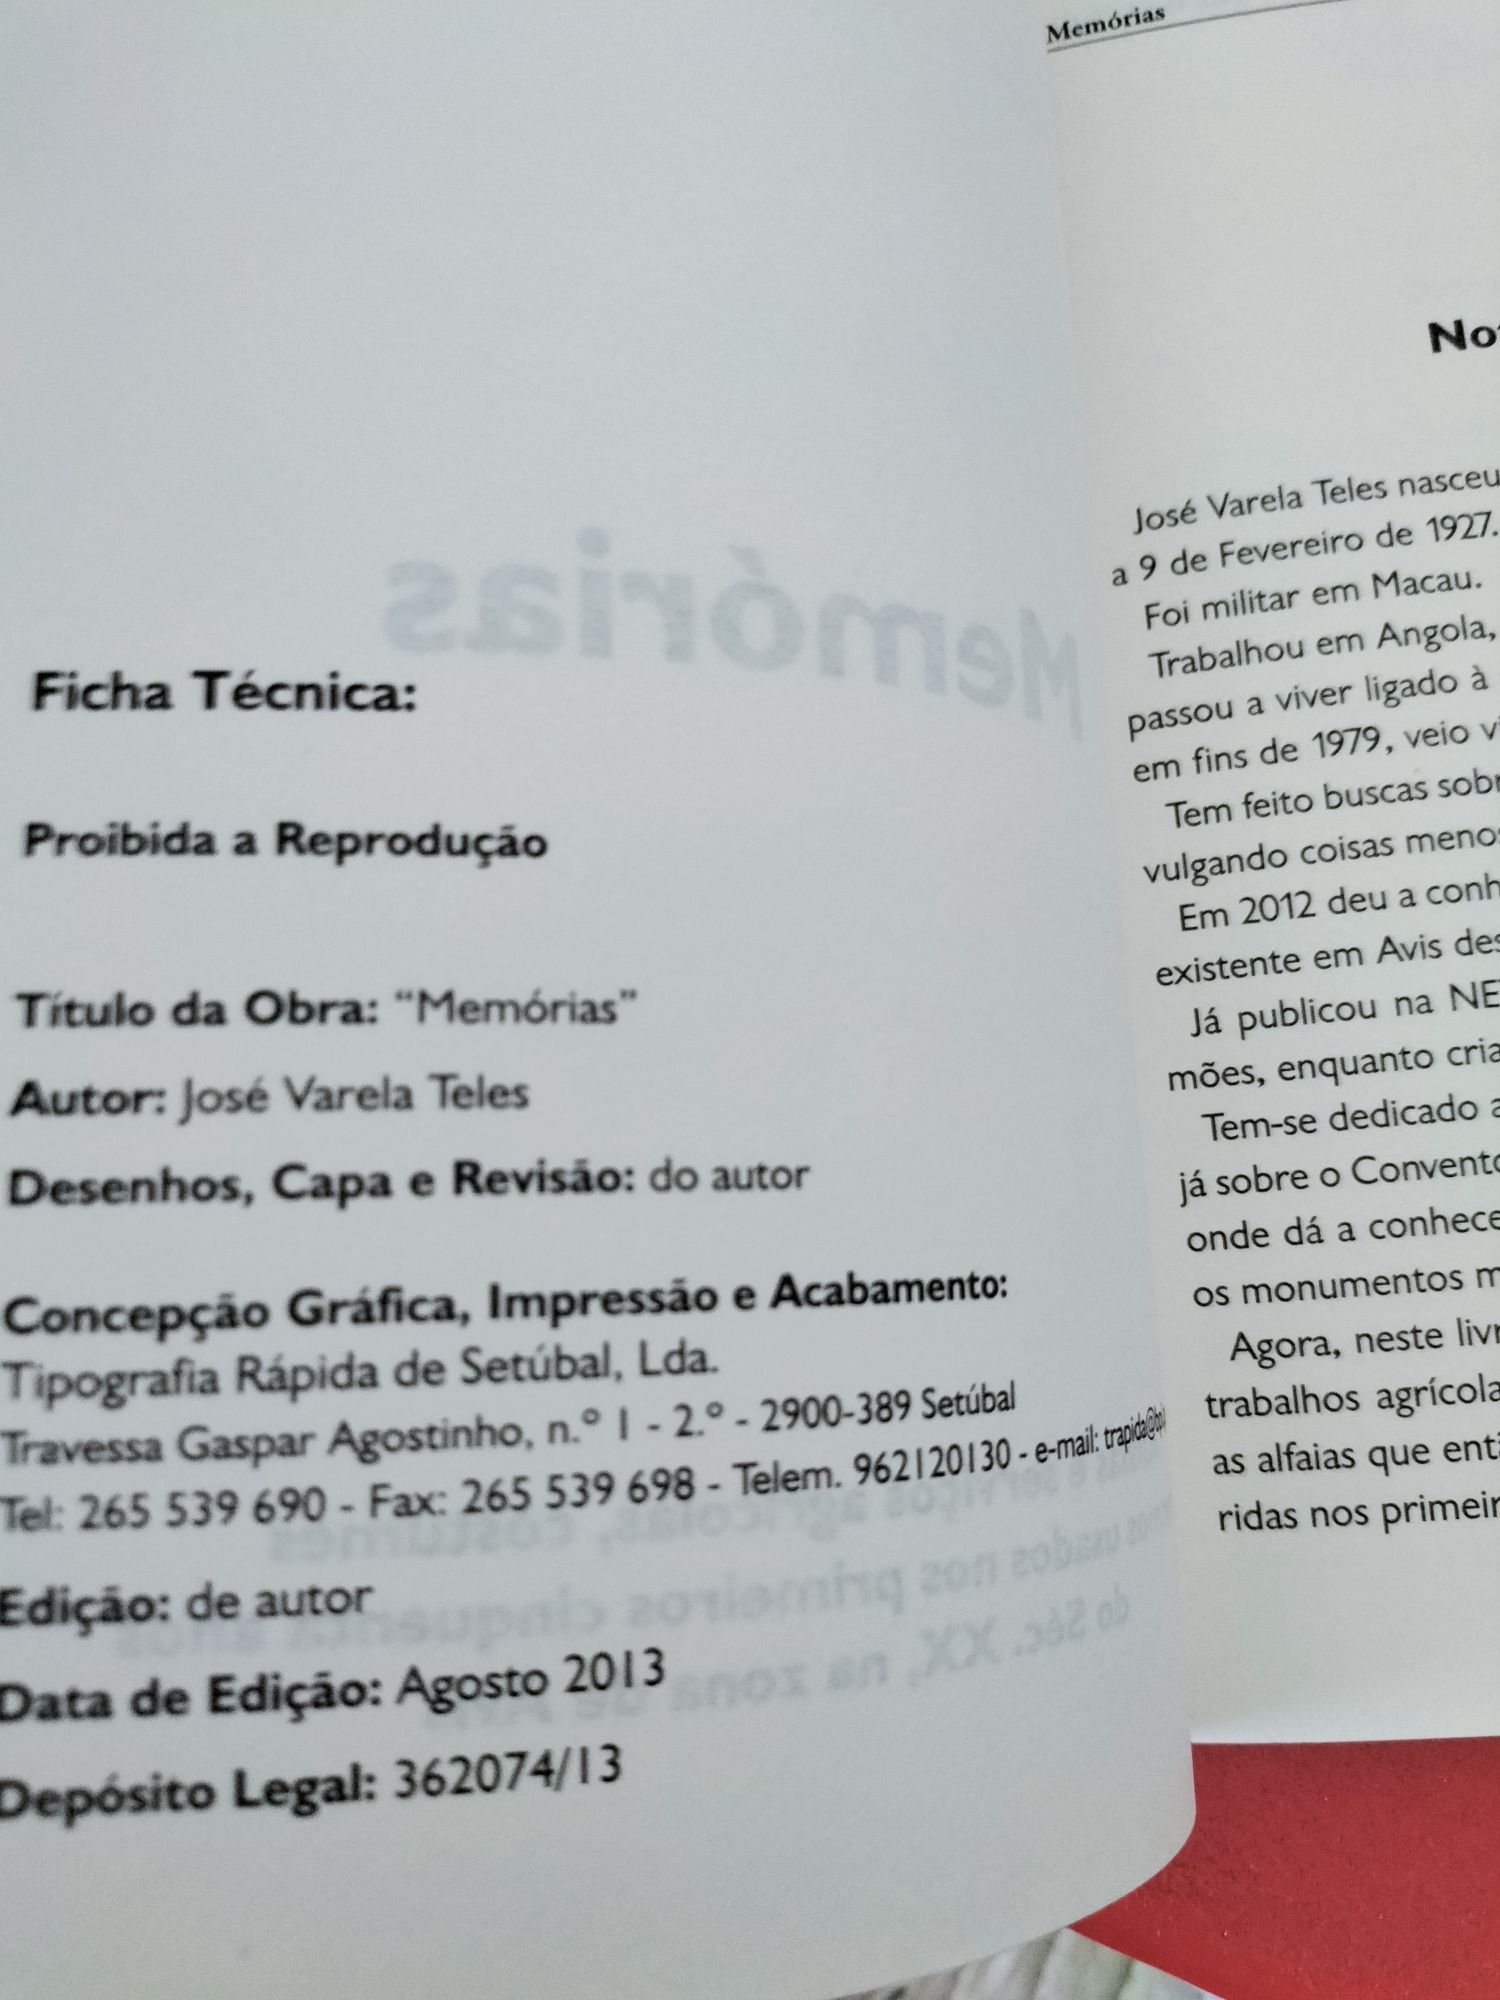 Livro "Memórias" de José Varela Teles